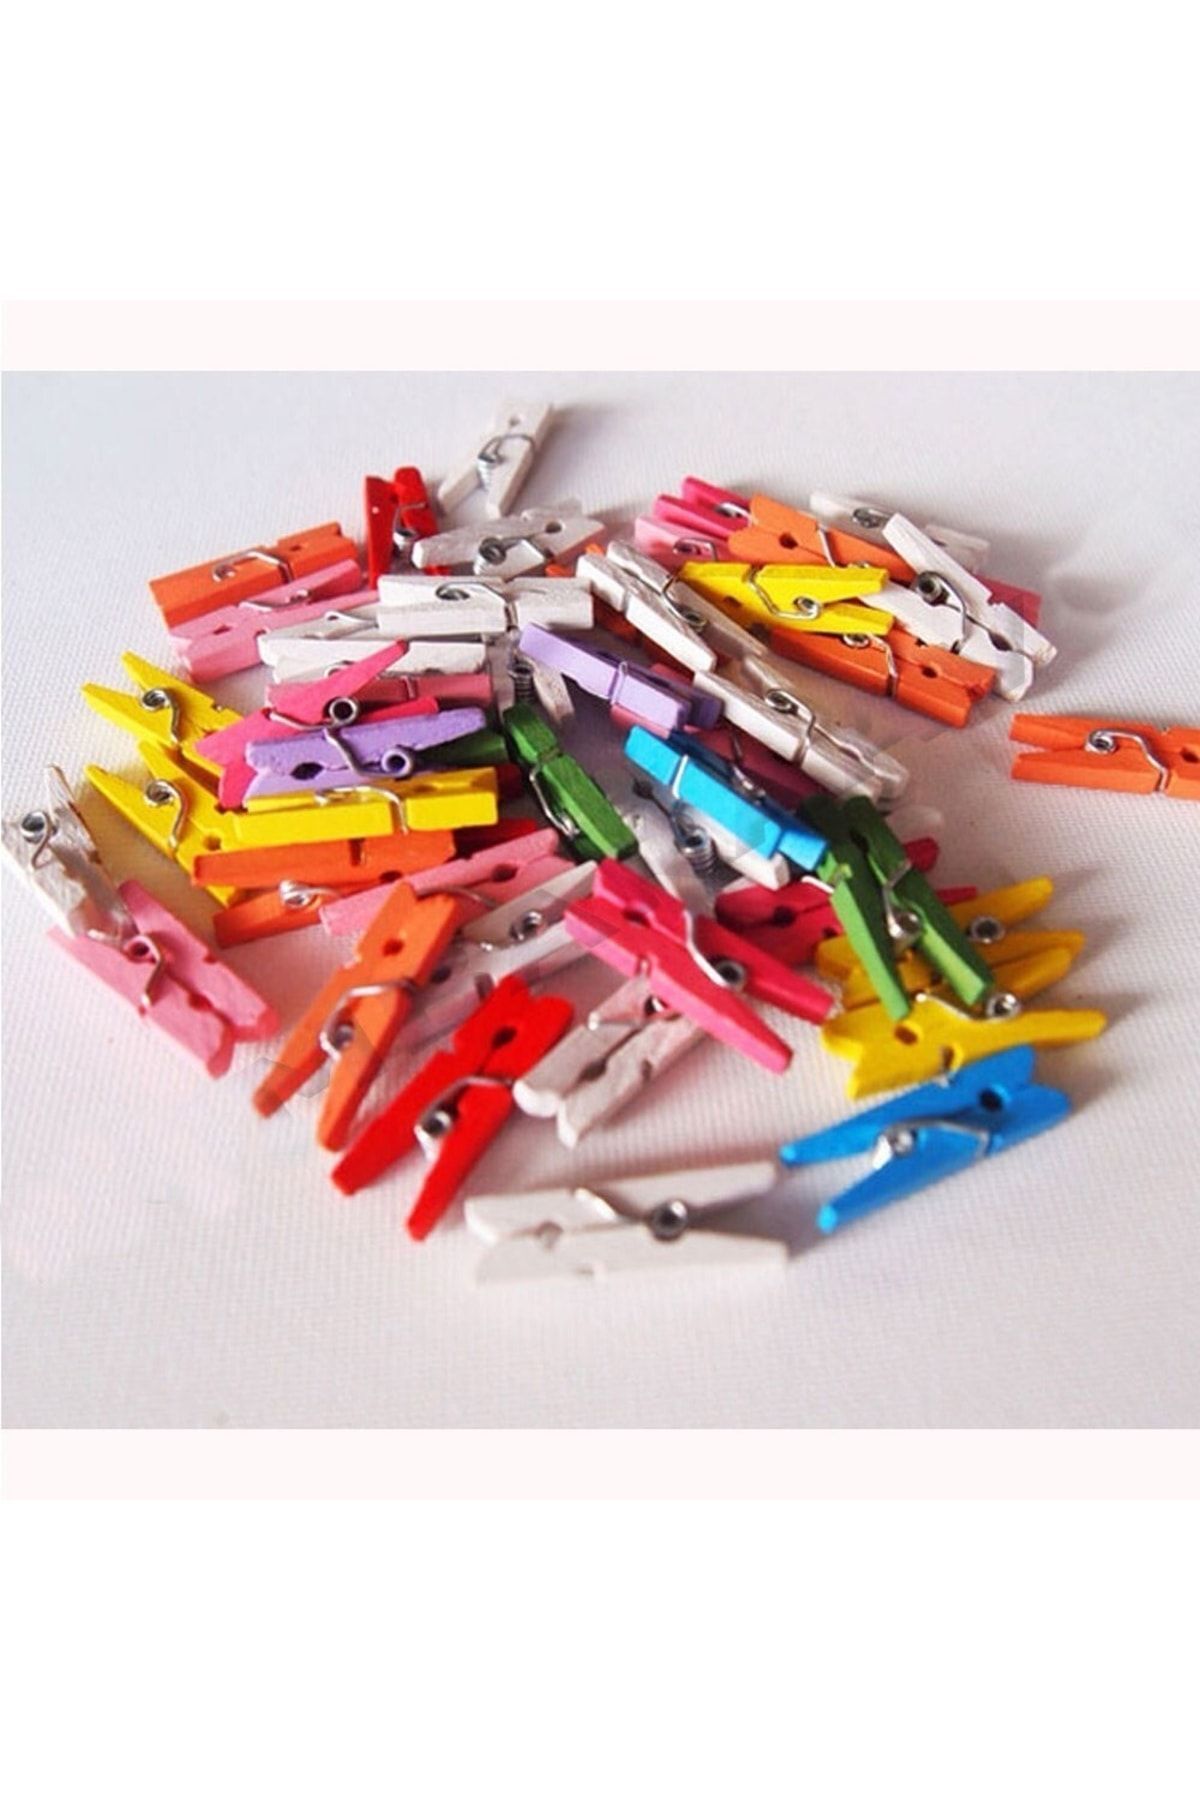 HKNYS Küçük Renkli Ahşap Mandal 100 Adet Paket Mini Renkli Mandal -dekoratif Fotoğraf Ve Süsleme Mandalı